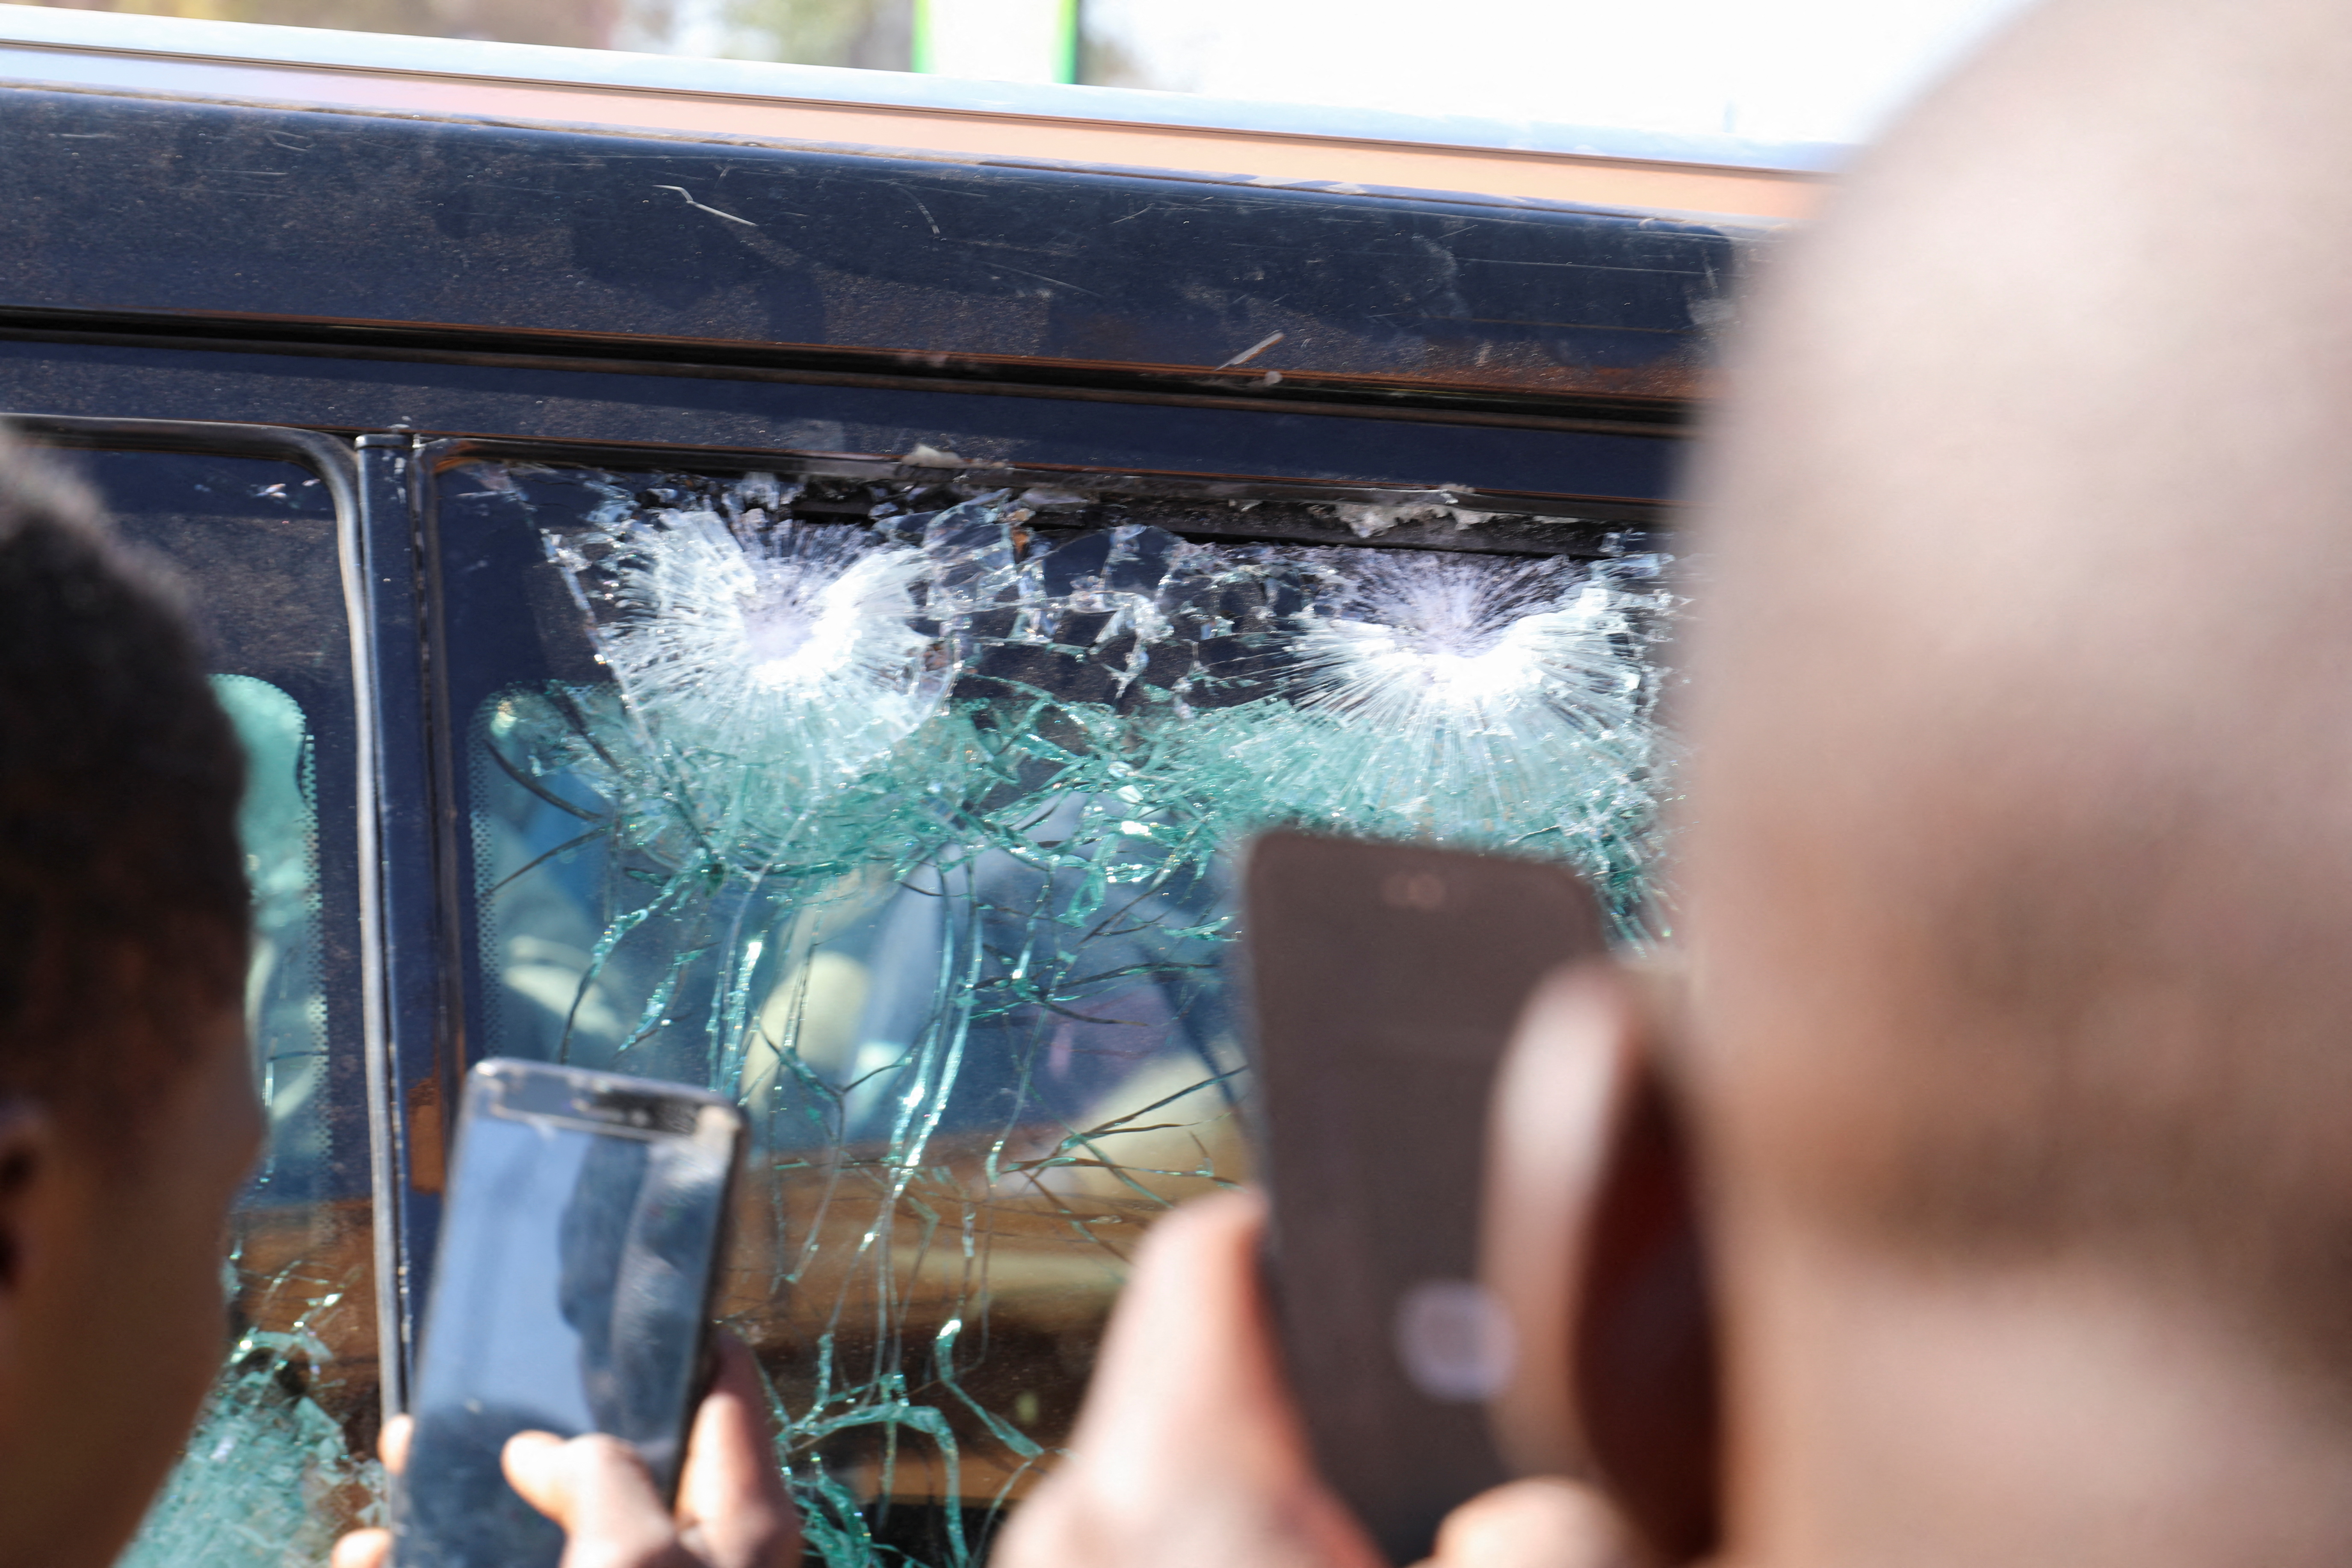 Οι άνθρωποι τραβούν φωτογραφίες της πρόσκρουσης των σφαιρών σε ένα παράθυρο του οχήματος που ανήκει στην προεδρία μετά τη κράτηση του Προέδρου της Μπουρκίνα Φάσο Ροχ Καμπόρε σε στρατιωτικό στρατόπεδο μετά από σφοδρά πυρά κοντά στην κατοικία του προέδρου στην Ουαγκαντούγκου της Μπουρκίνα Φάσο, 24 Ιανουαρίου 2022. REUTERS/ Βίνσεντ Μπάντο